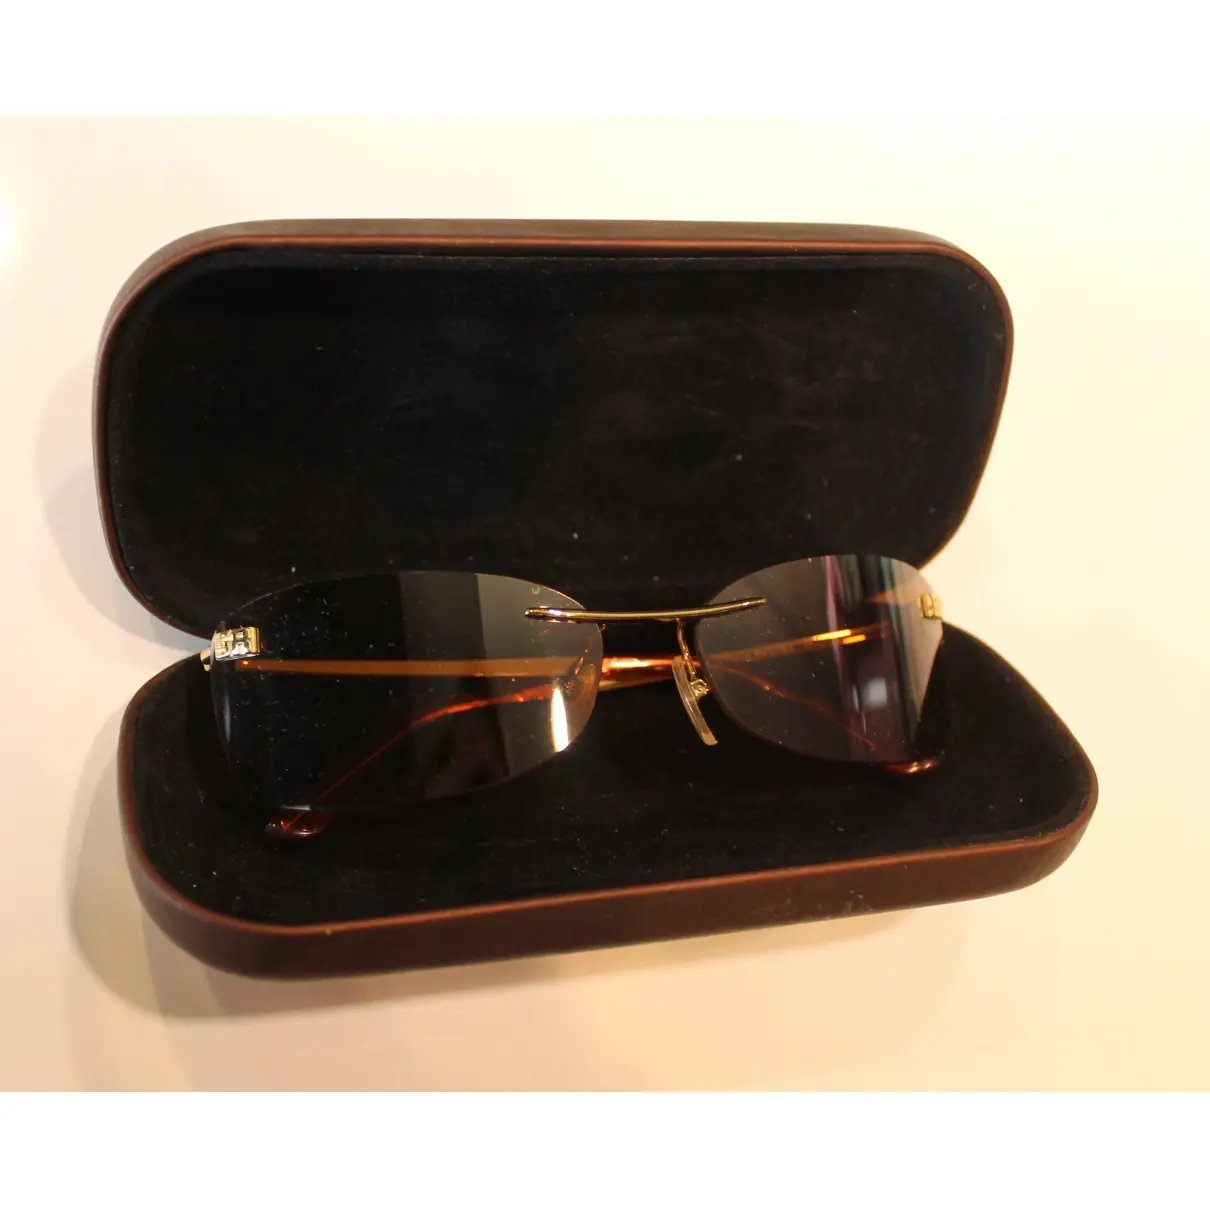 Sonia Rykiel Sunglasses for sale - Vintage